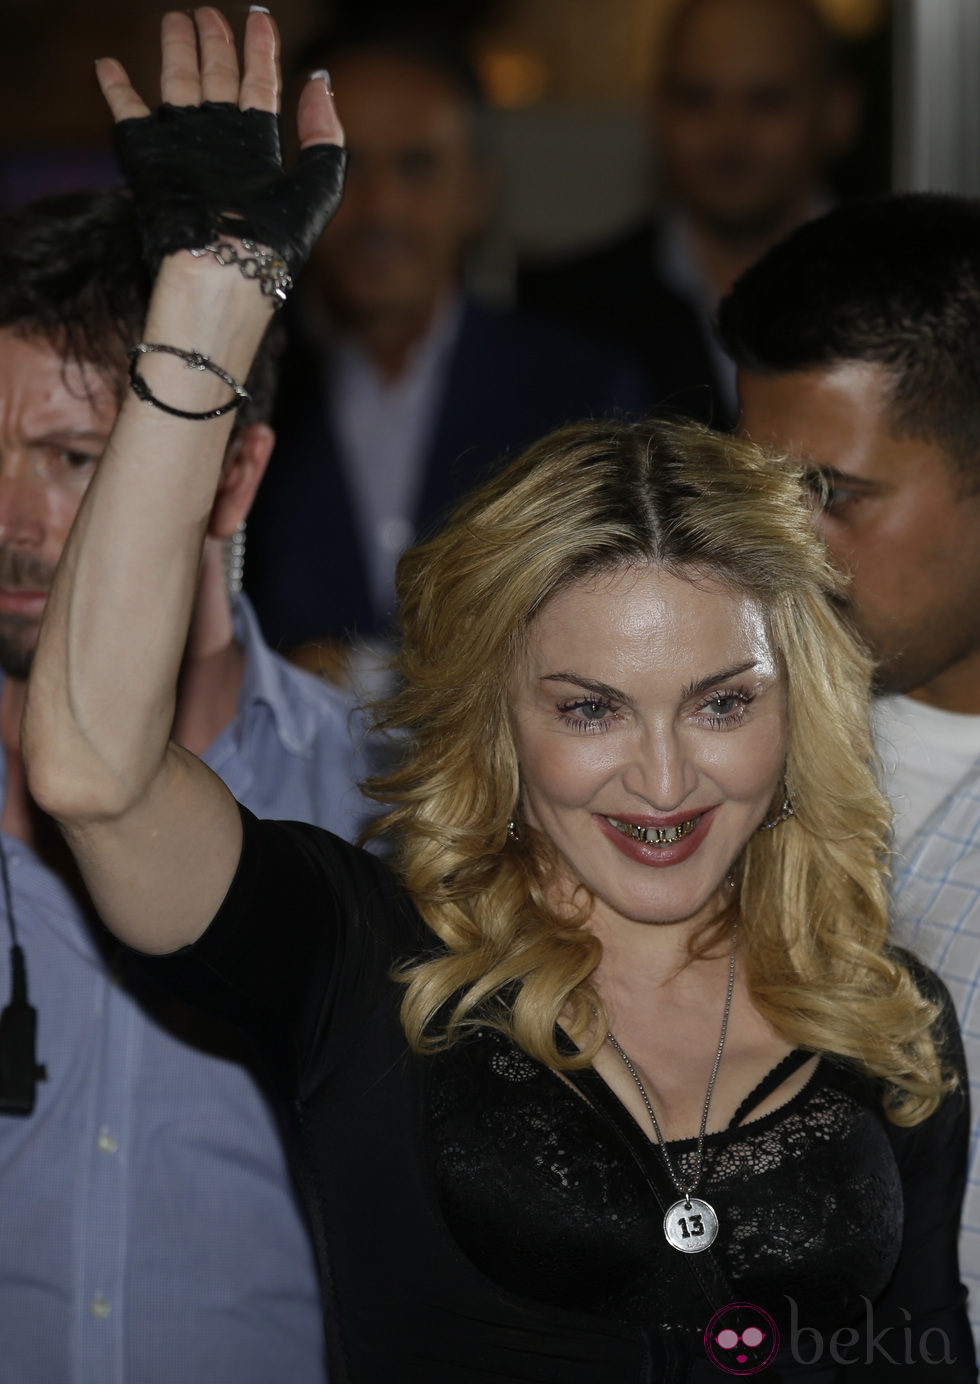 Madonna luciendo sus fundas de dientes doradas en Roma